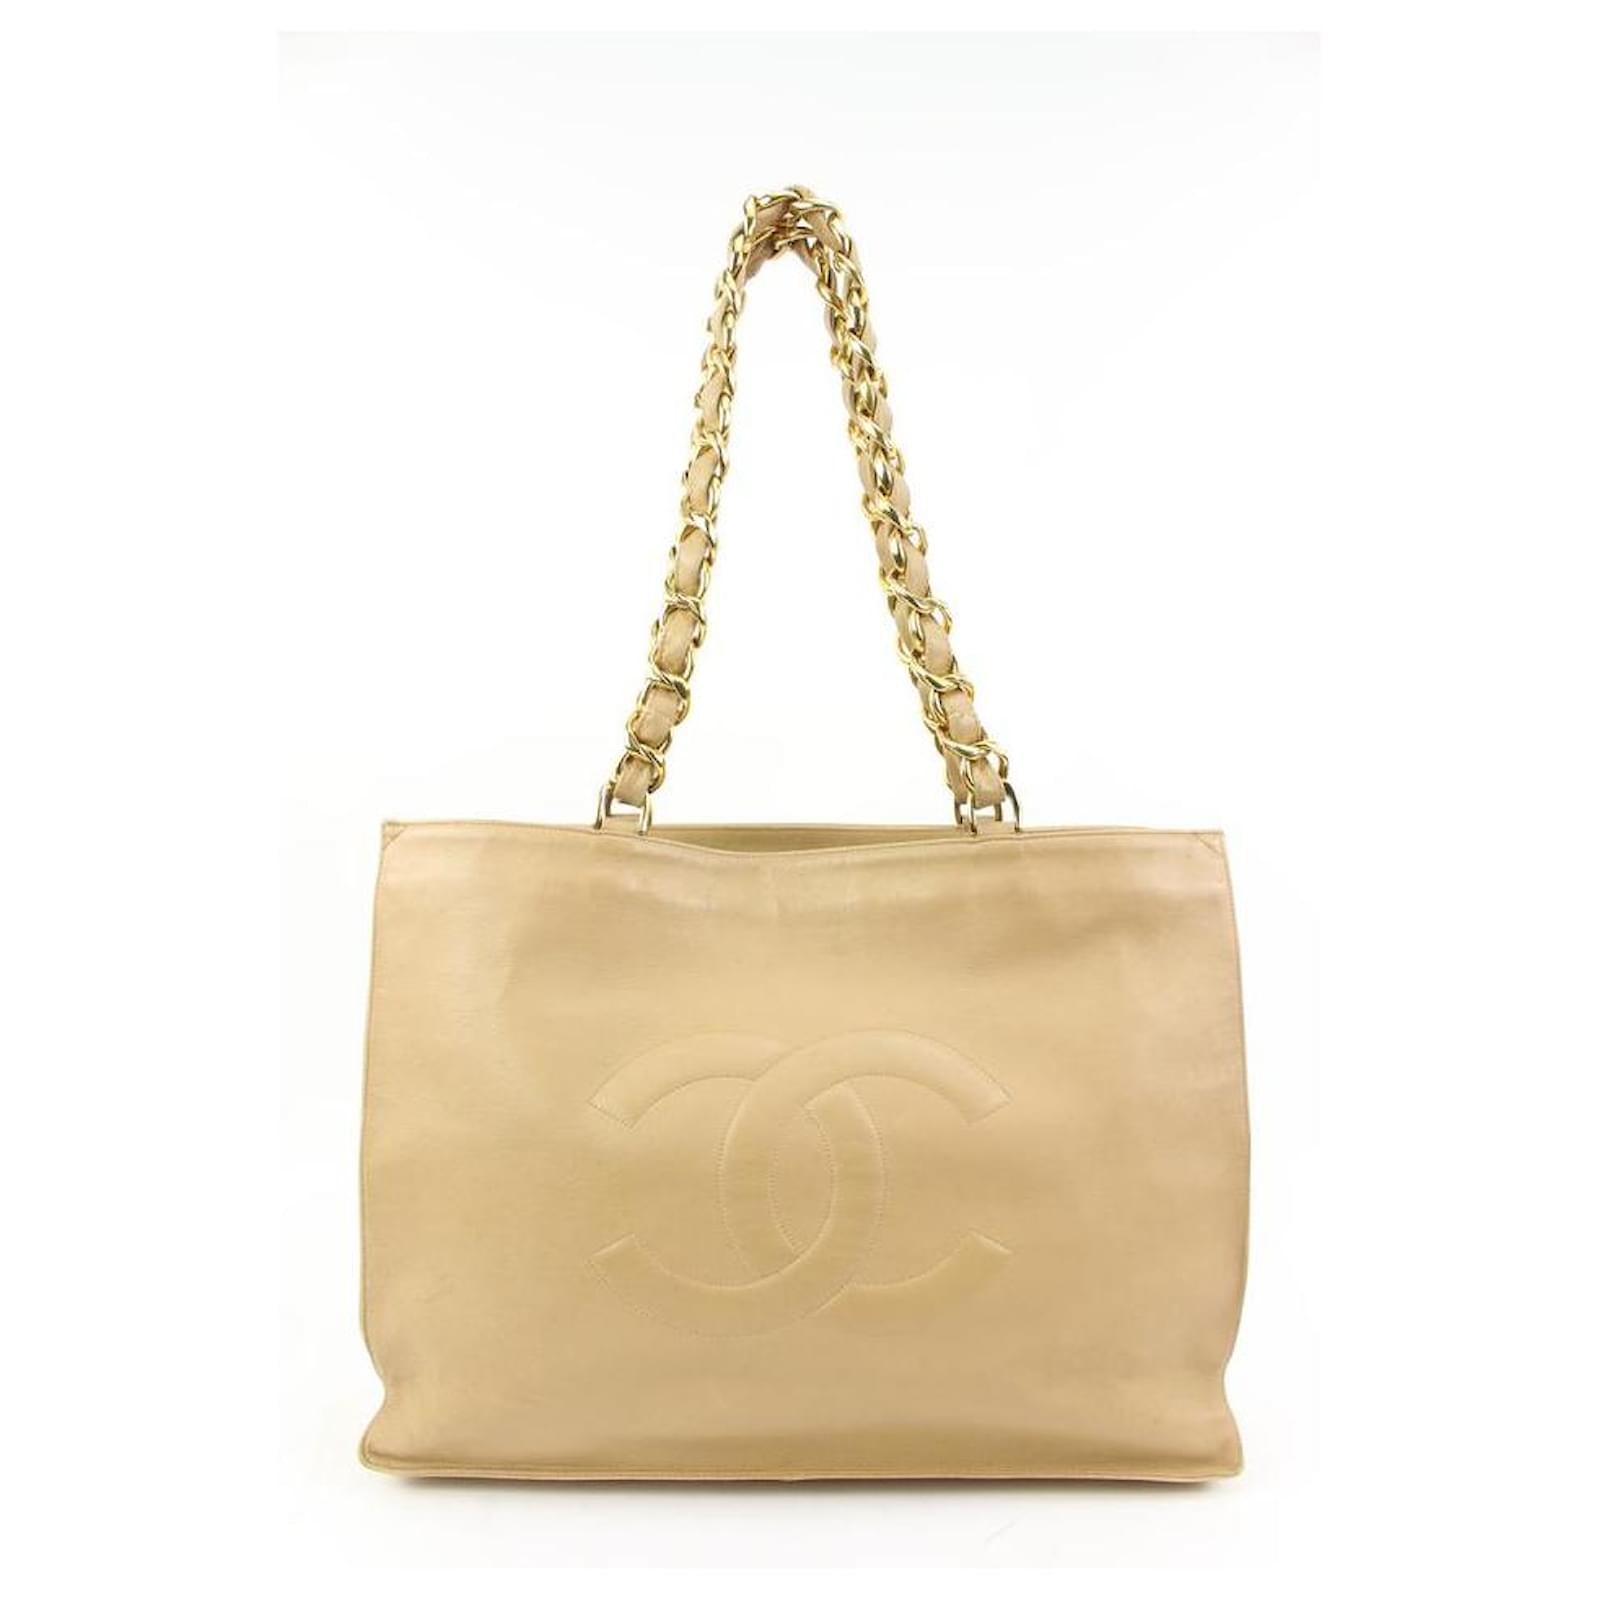 Chanel Jumbo Gold Chain Beige Lambskin Shopper Tote 58ck315s